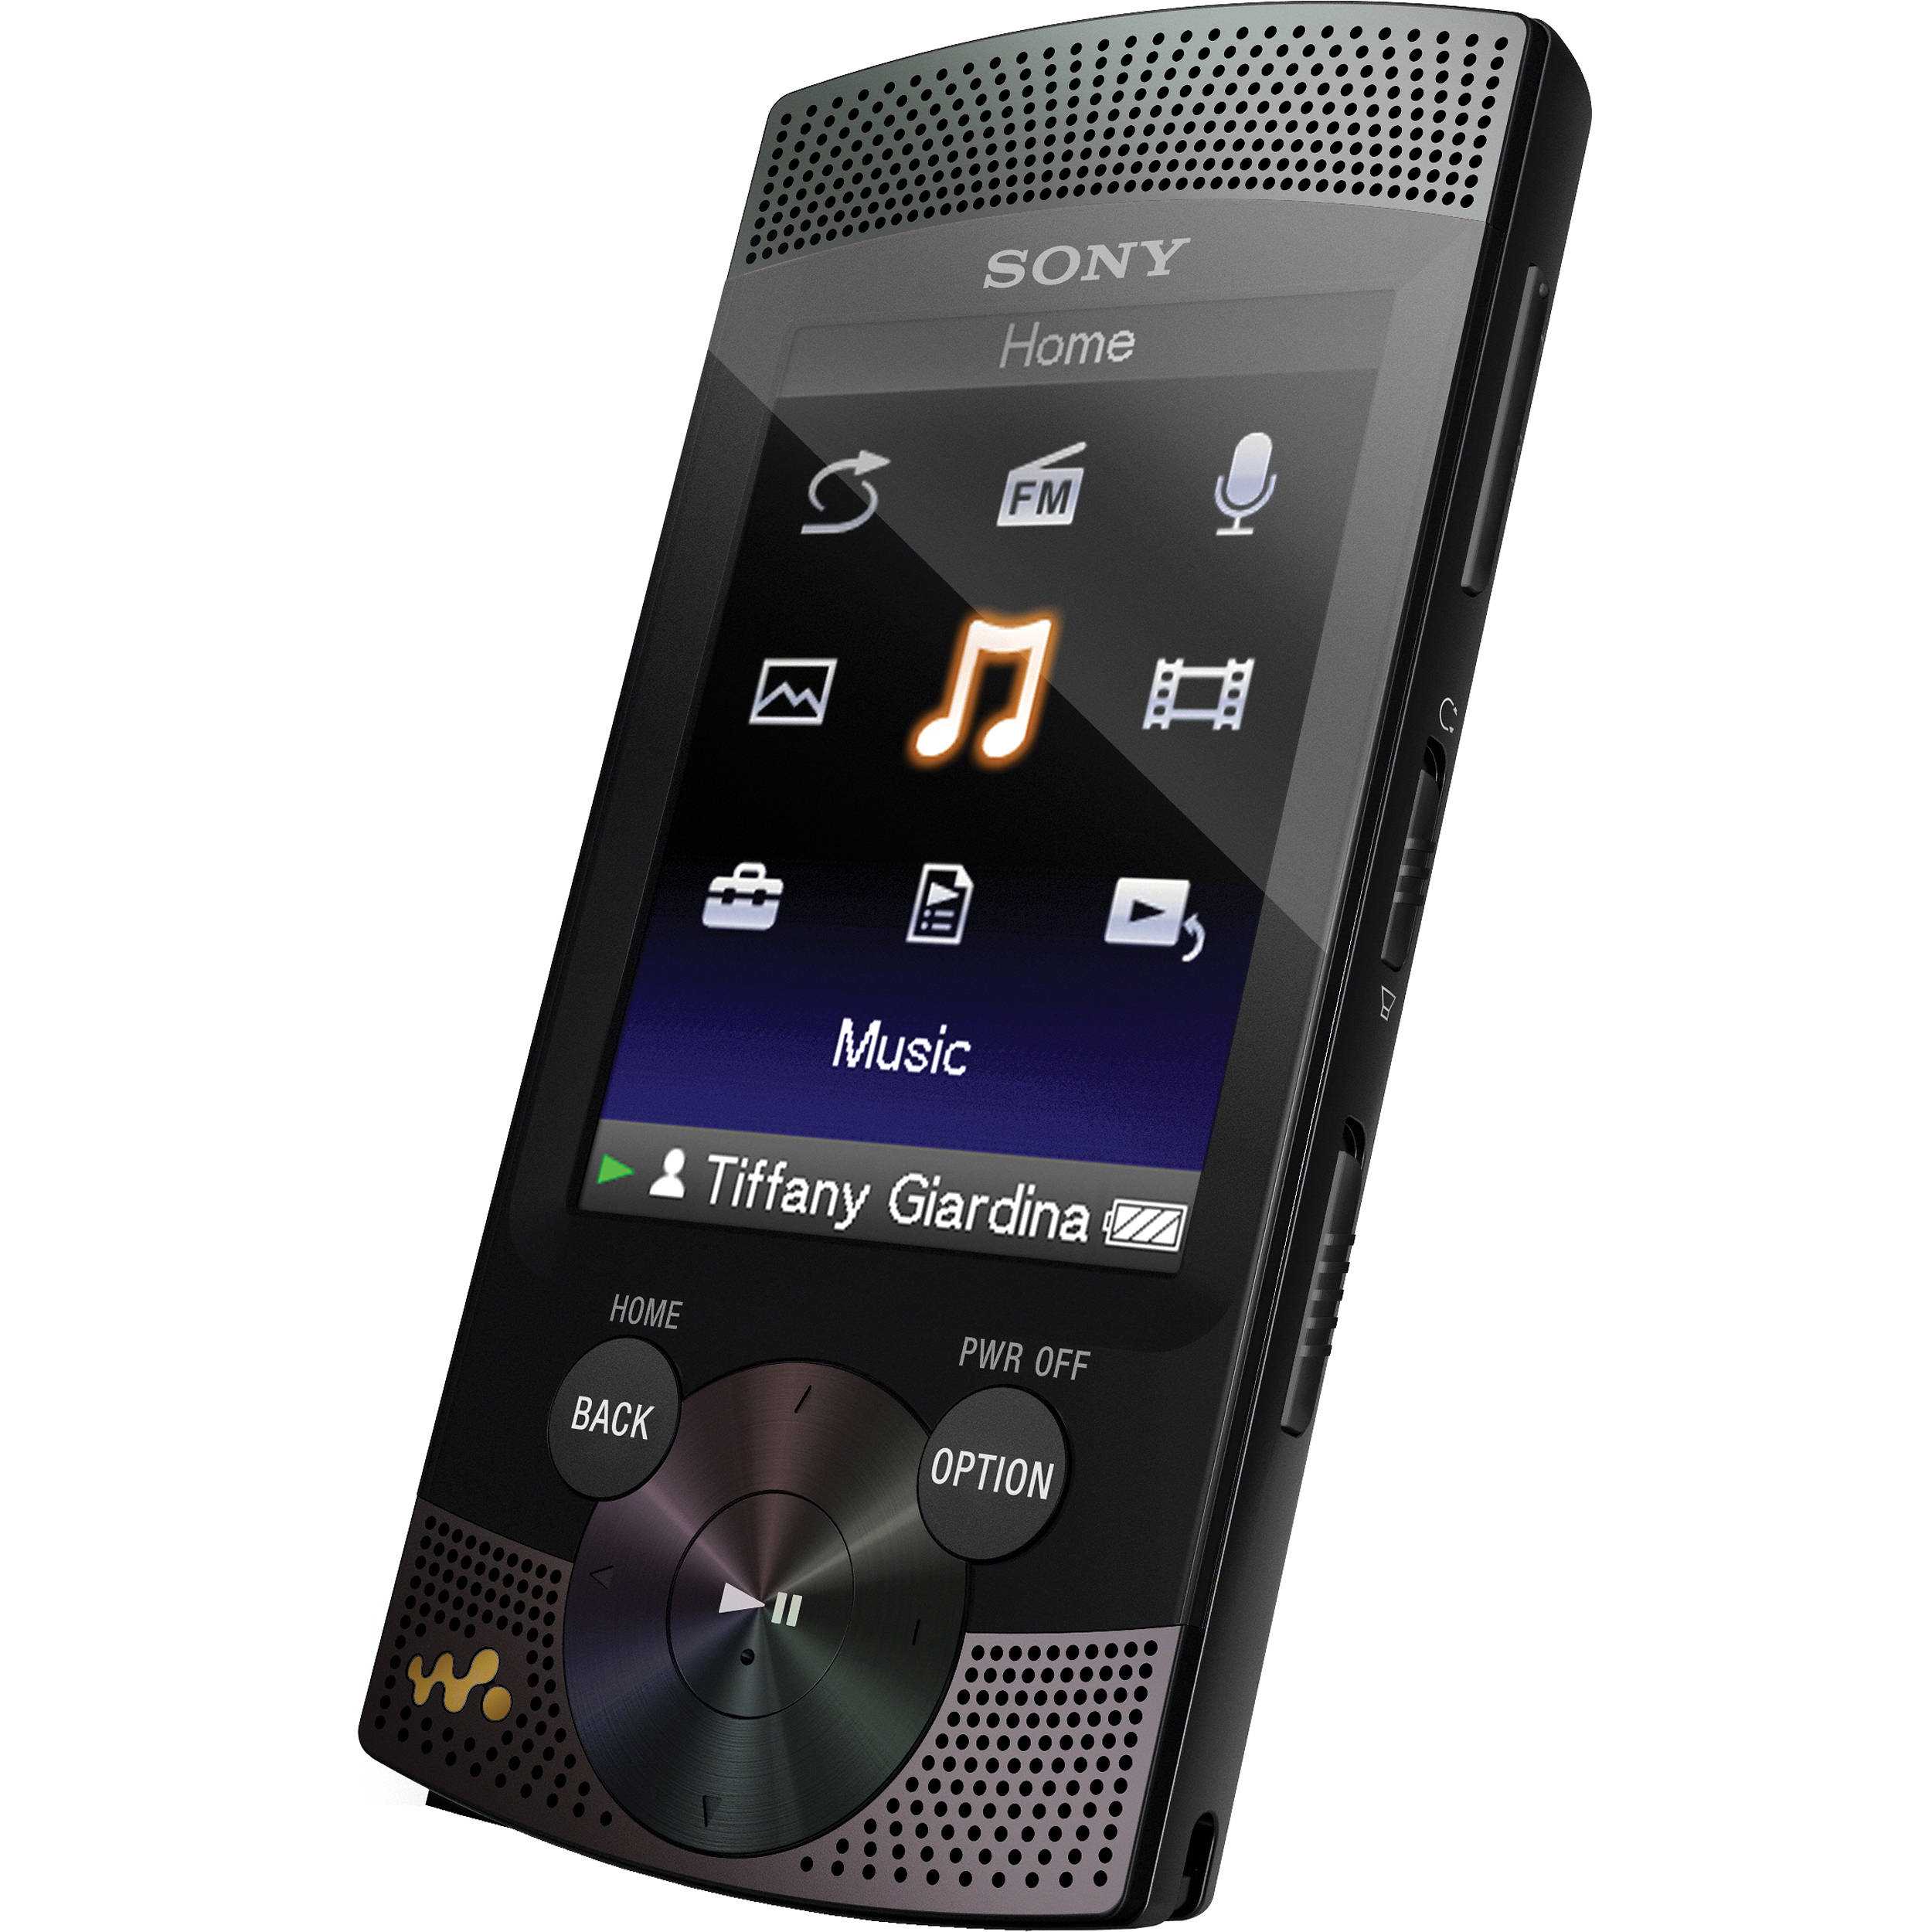 MP3-плеера Sony NWZ-S763 - подробные характеристики обзоры видео фото Цены в интернет-магазинах где можно купить mp3-плееру Sony NWZ-S763